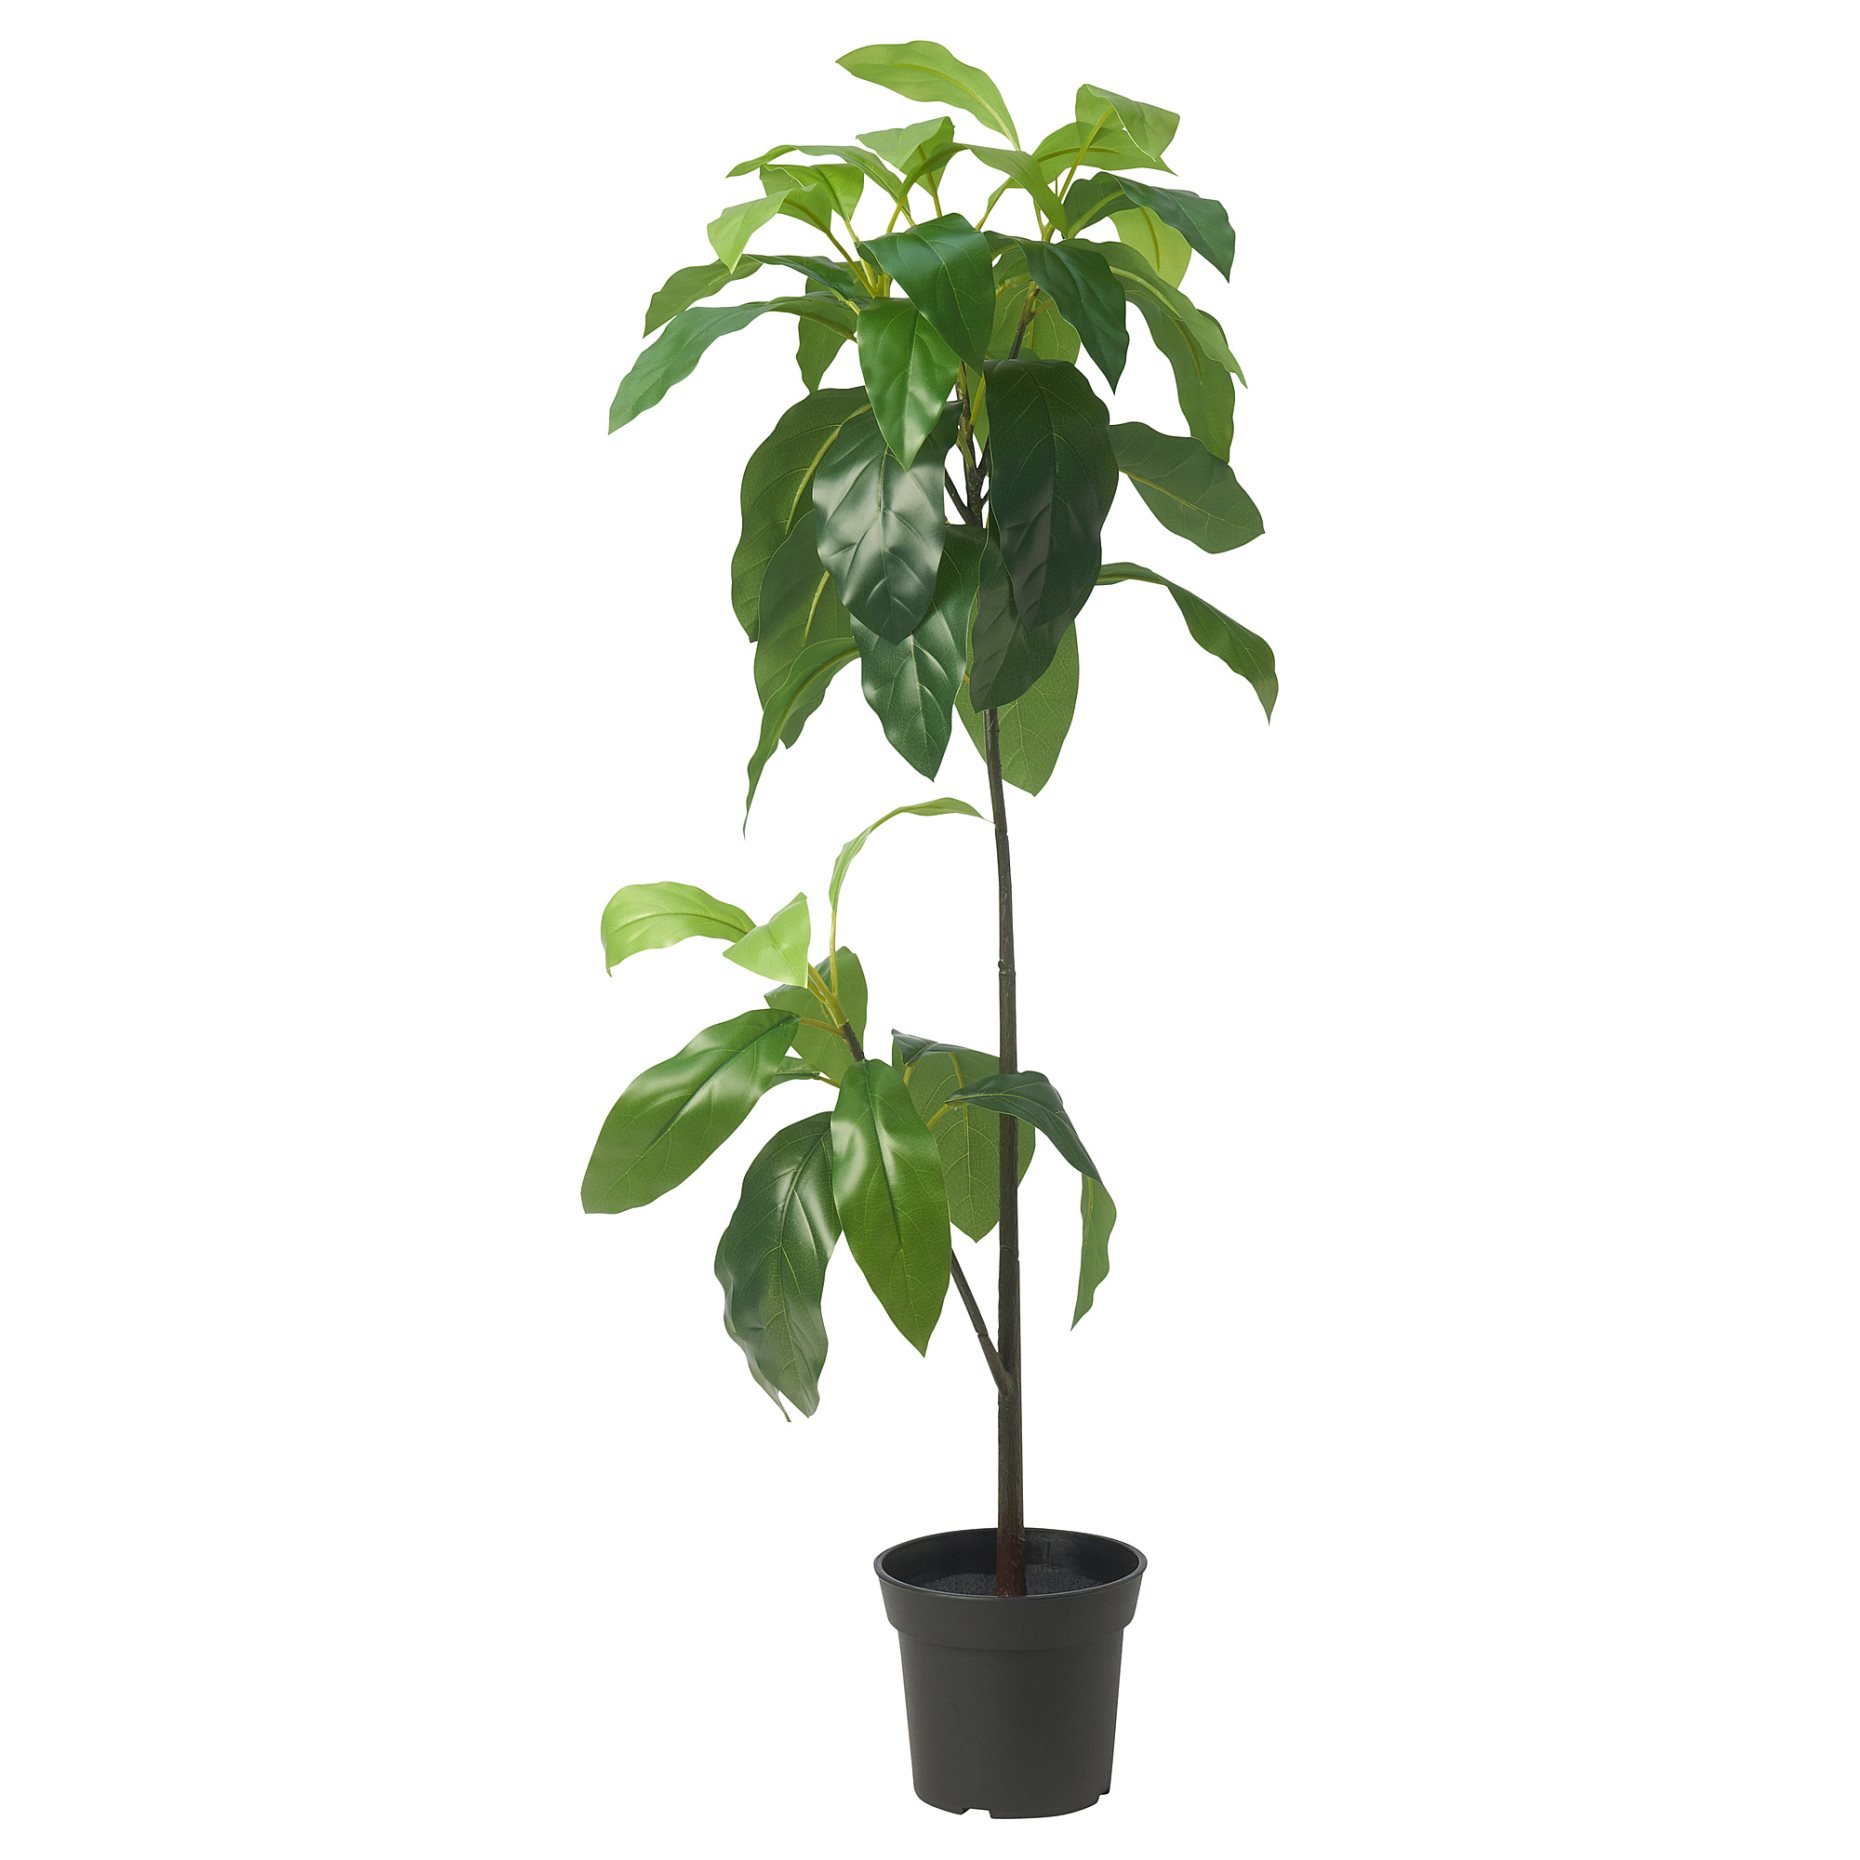 FEJKA, τεχνητό φυτό σε γλάστρα/εσωτερικού/εξωτερικού χώρου/Αβοκάντο, 15 cm, 105.716.93